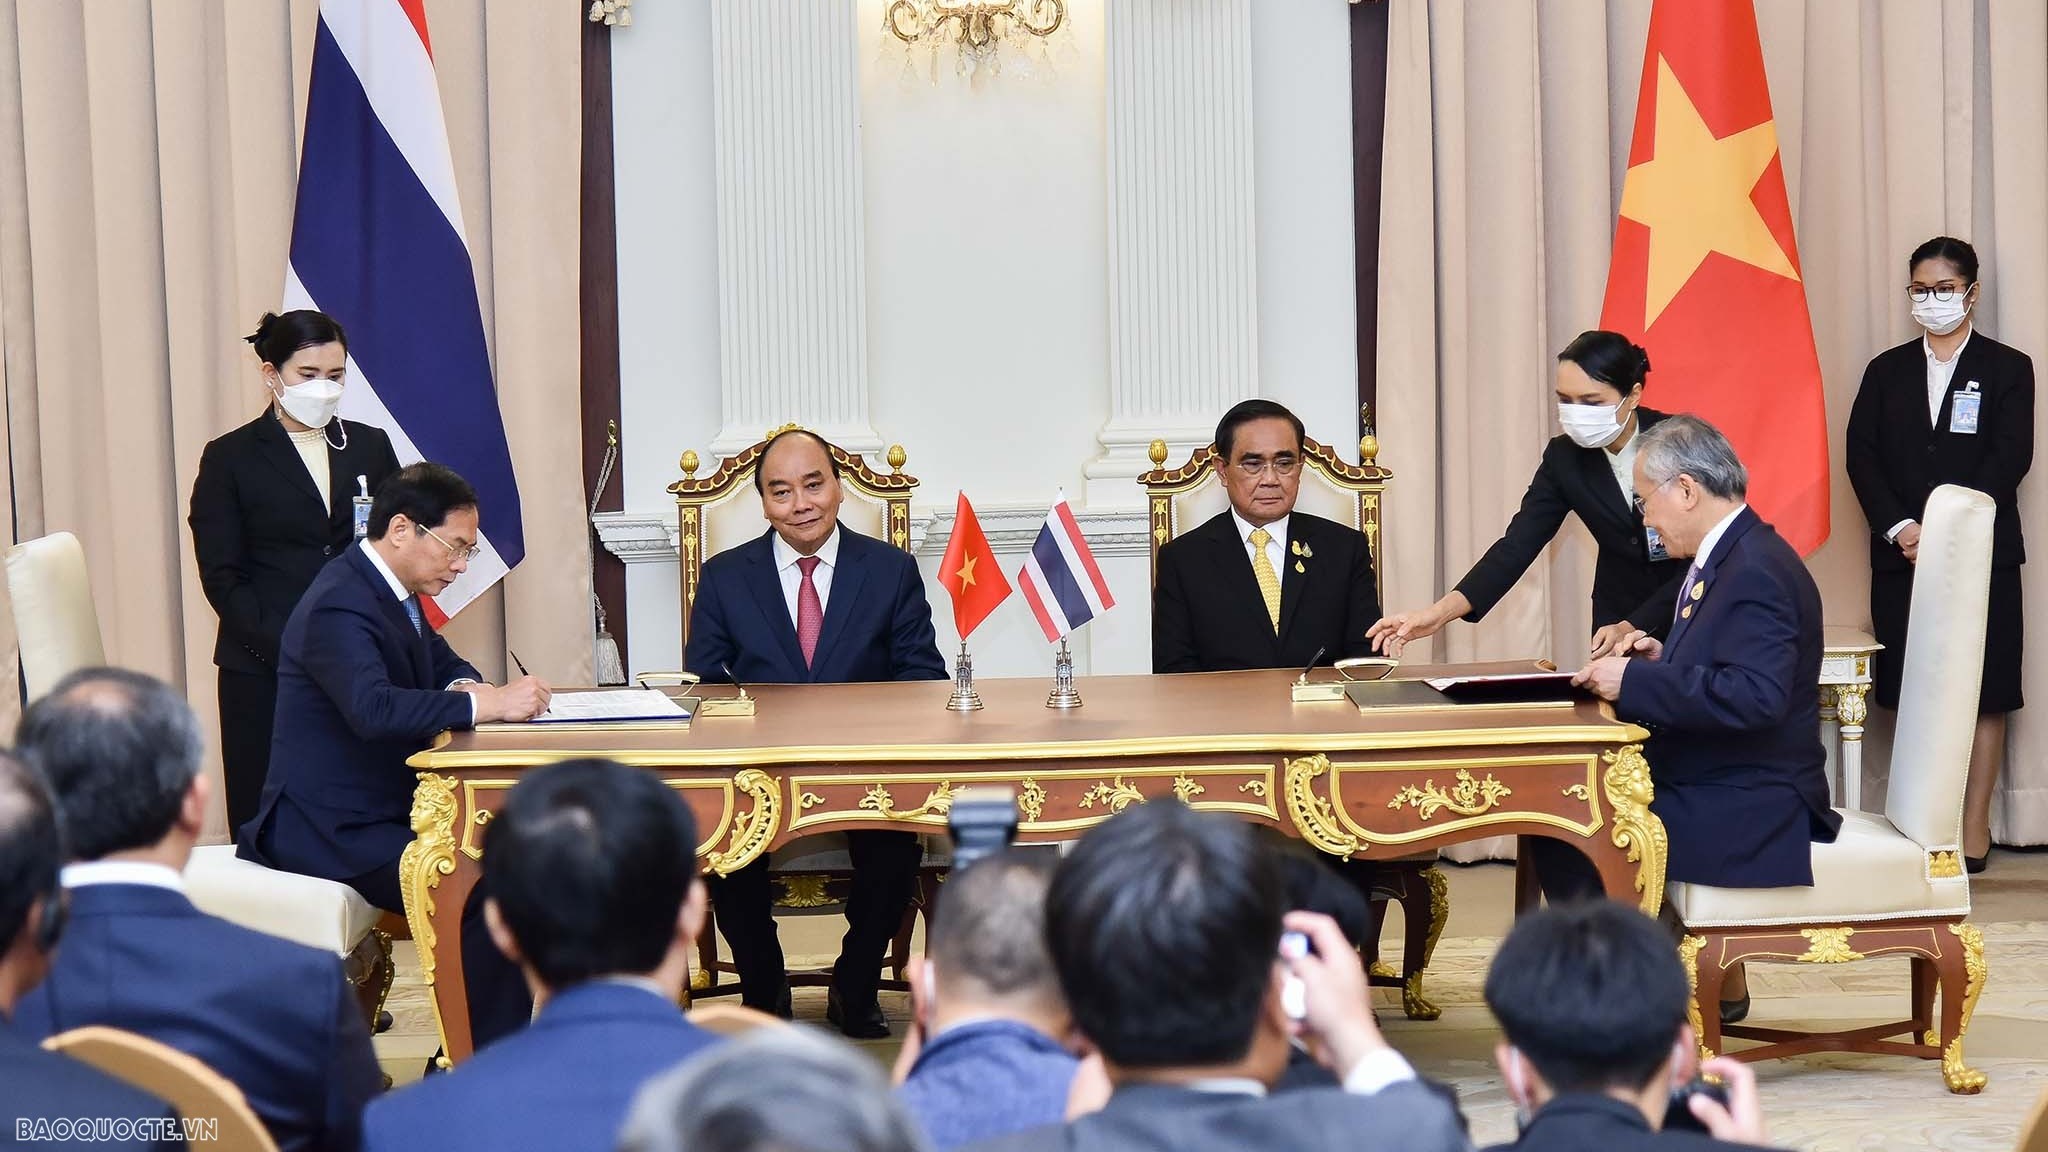 Chủ tịch nước Nguyễn Xuân Phúc thăm chính thức Thái Lan và dự Hội nghị APEC: Chuyến đi ‘2 trong 1’ chứa đựng nhiều thông điệp